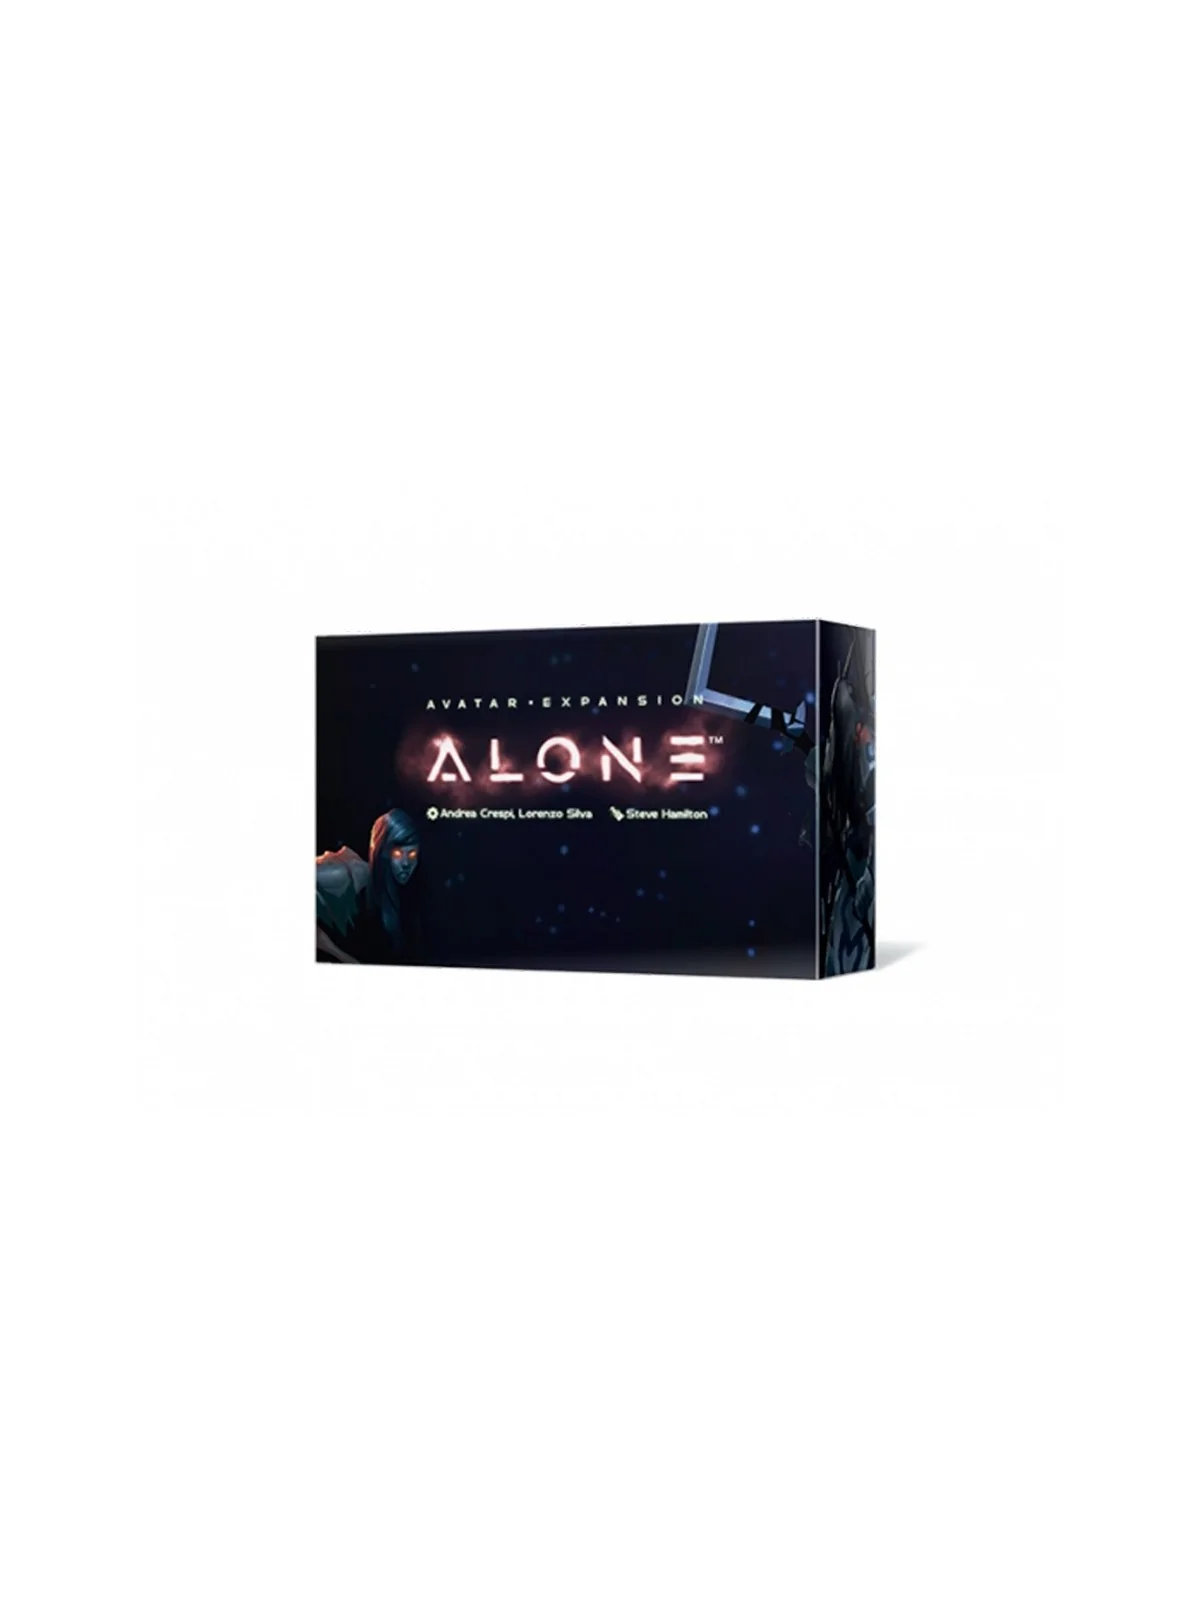 Comprar Alone: Avatar Expansión barato al mejor precio 22,49 € de Horr